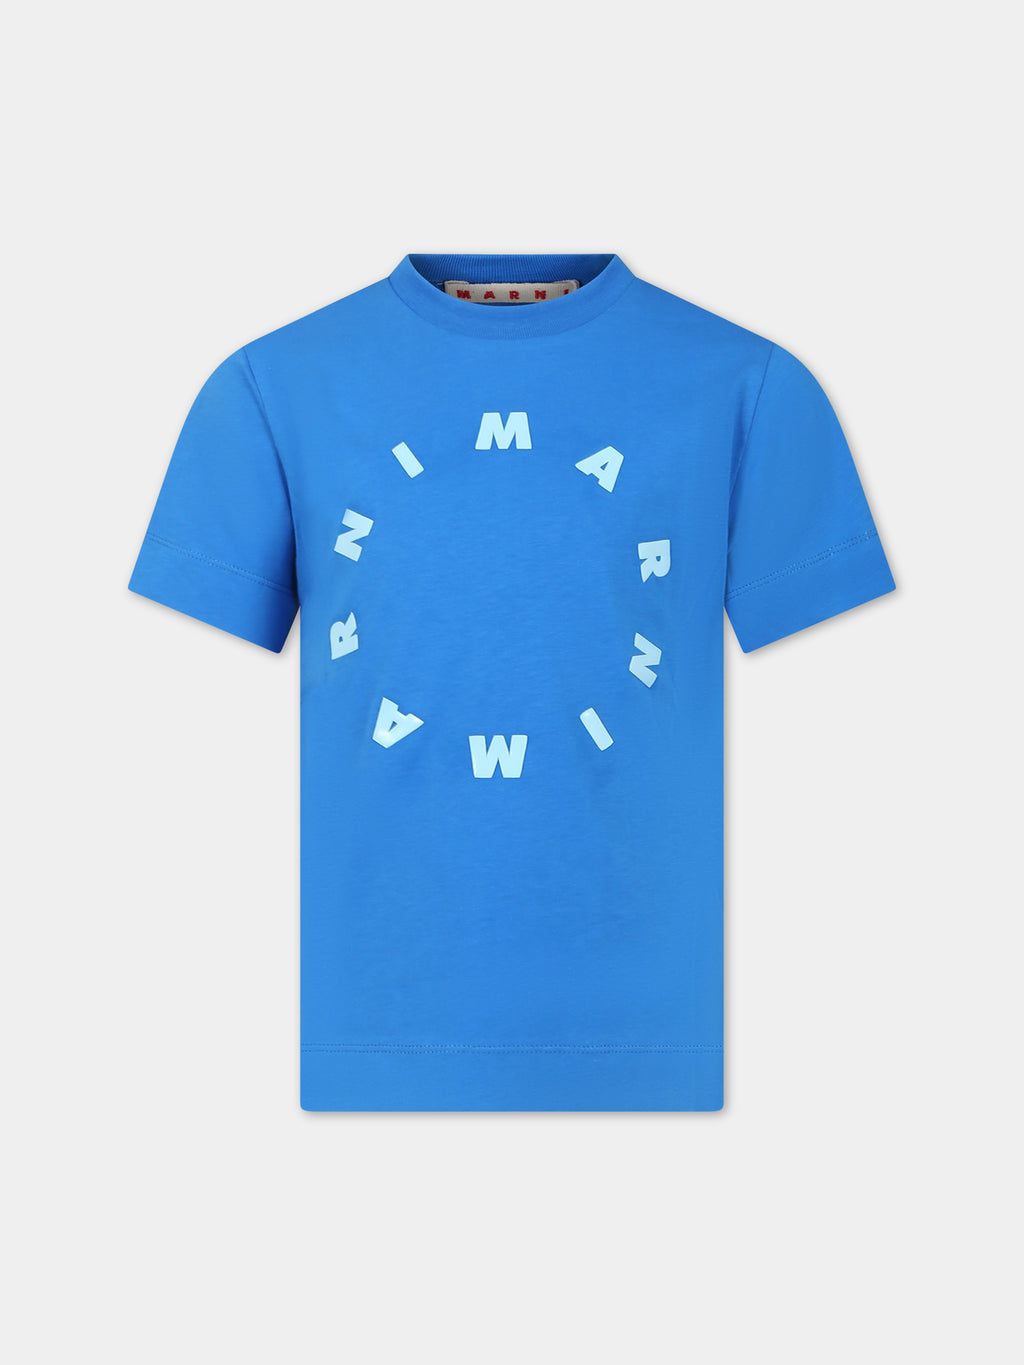 T-shirt bleu ciel pour enfants avec logo